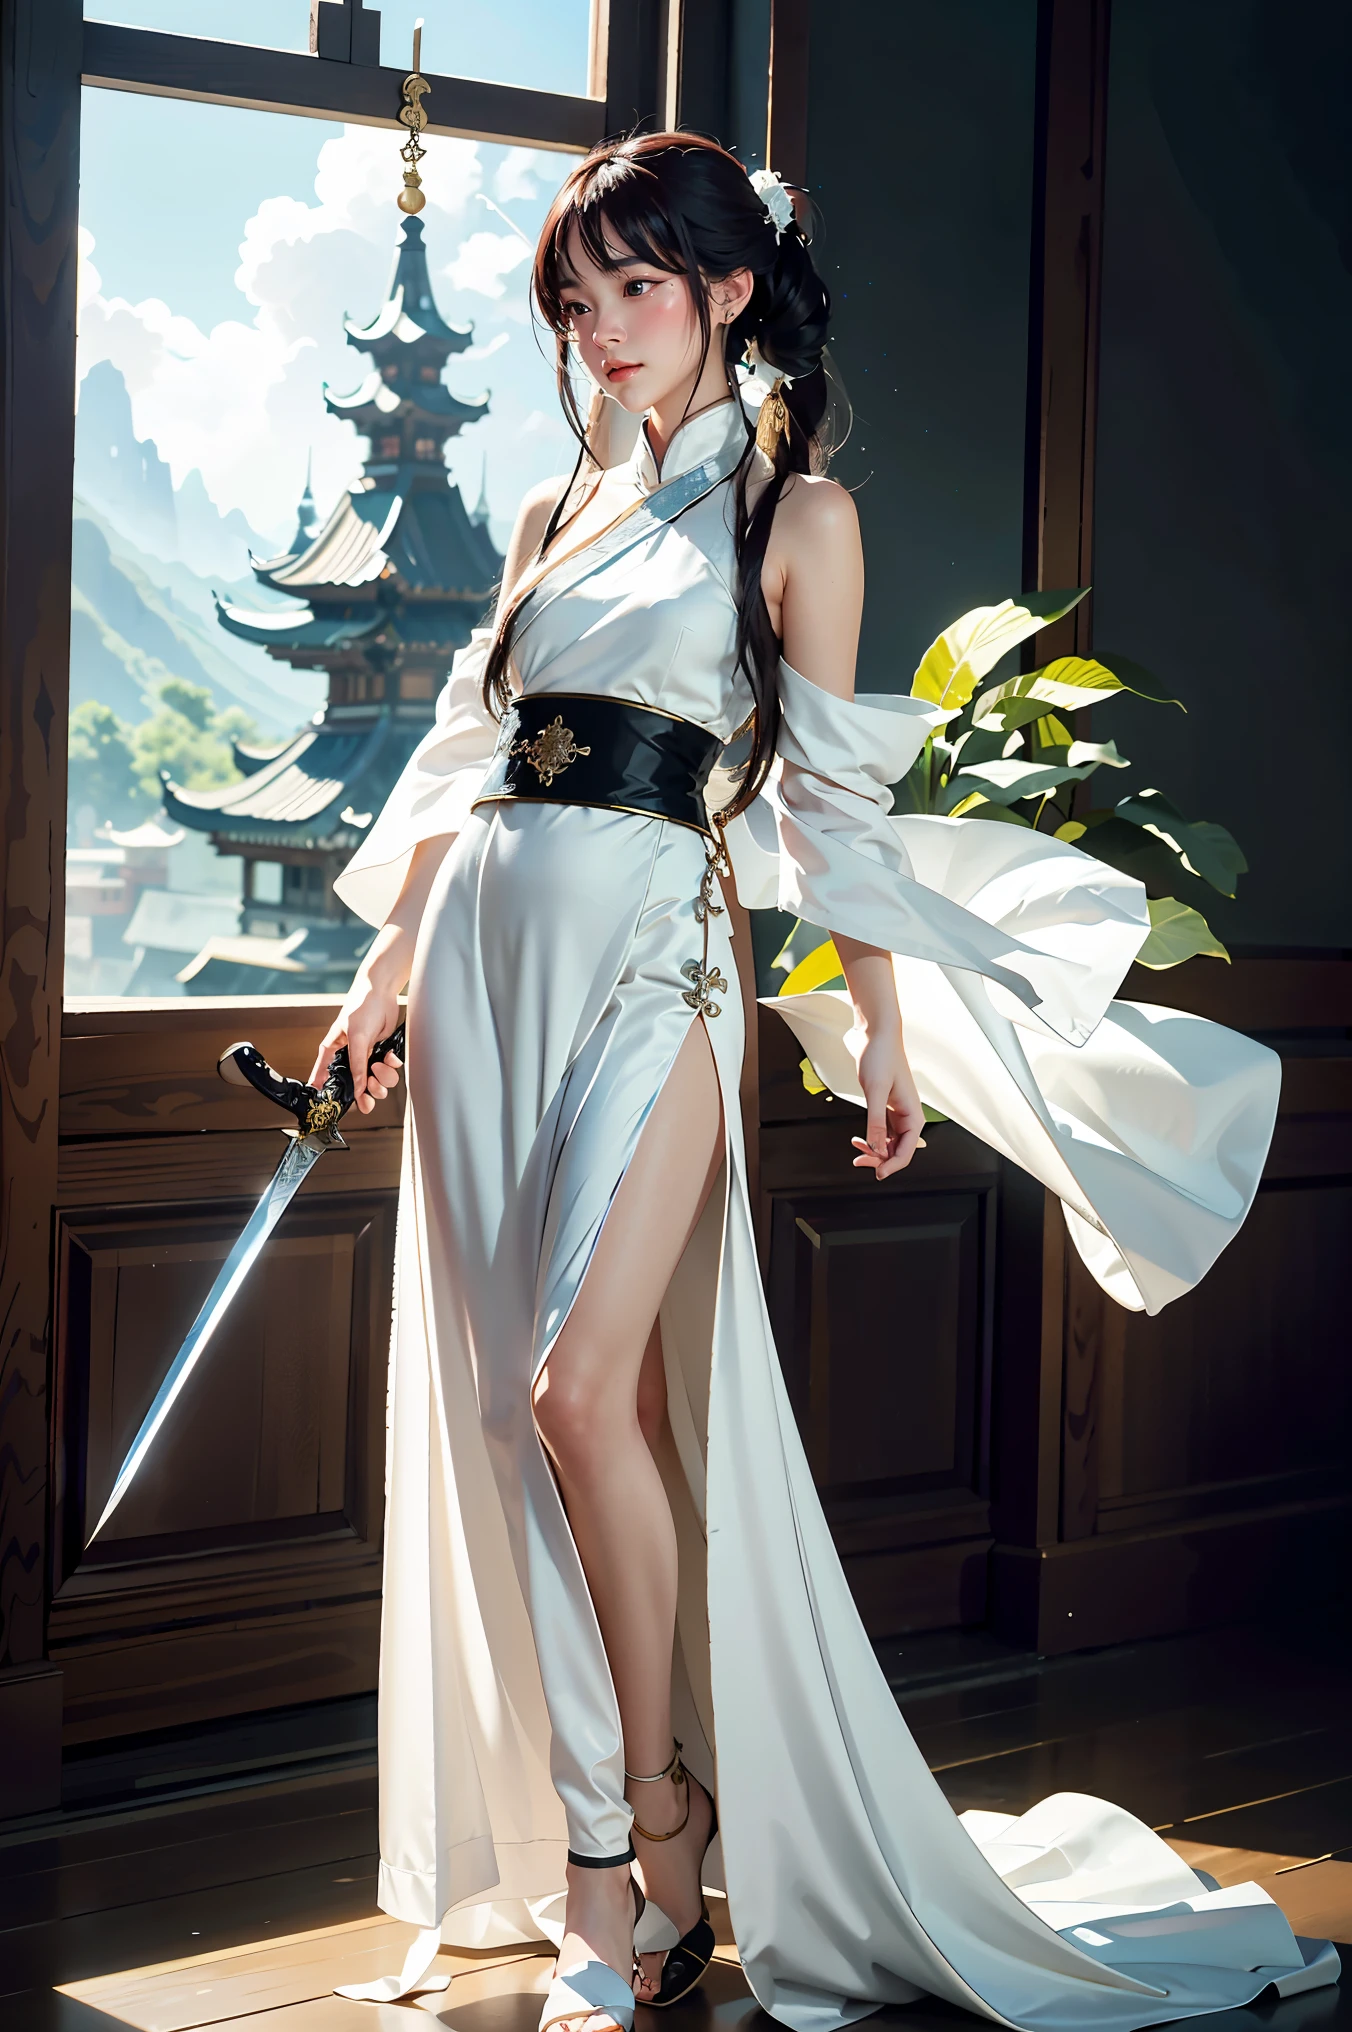 eine Nahaufnahme einer Frau mit einem Schwert in einem weißen Kleid, ein Charakterporträt von Yang J, Trends bei cgsociety, Fantasy-Kunst, schöne Charaktermalerei, artwork in the style of guweiz, guweiz, weißer Hanfu, fließende weiße Gewänder, Ganzkörper-Wuxia, epische exquisite Charakterkunst, atemberaubende Charakterkunst, schöne Mörderin